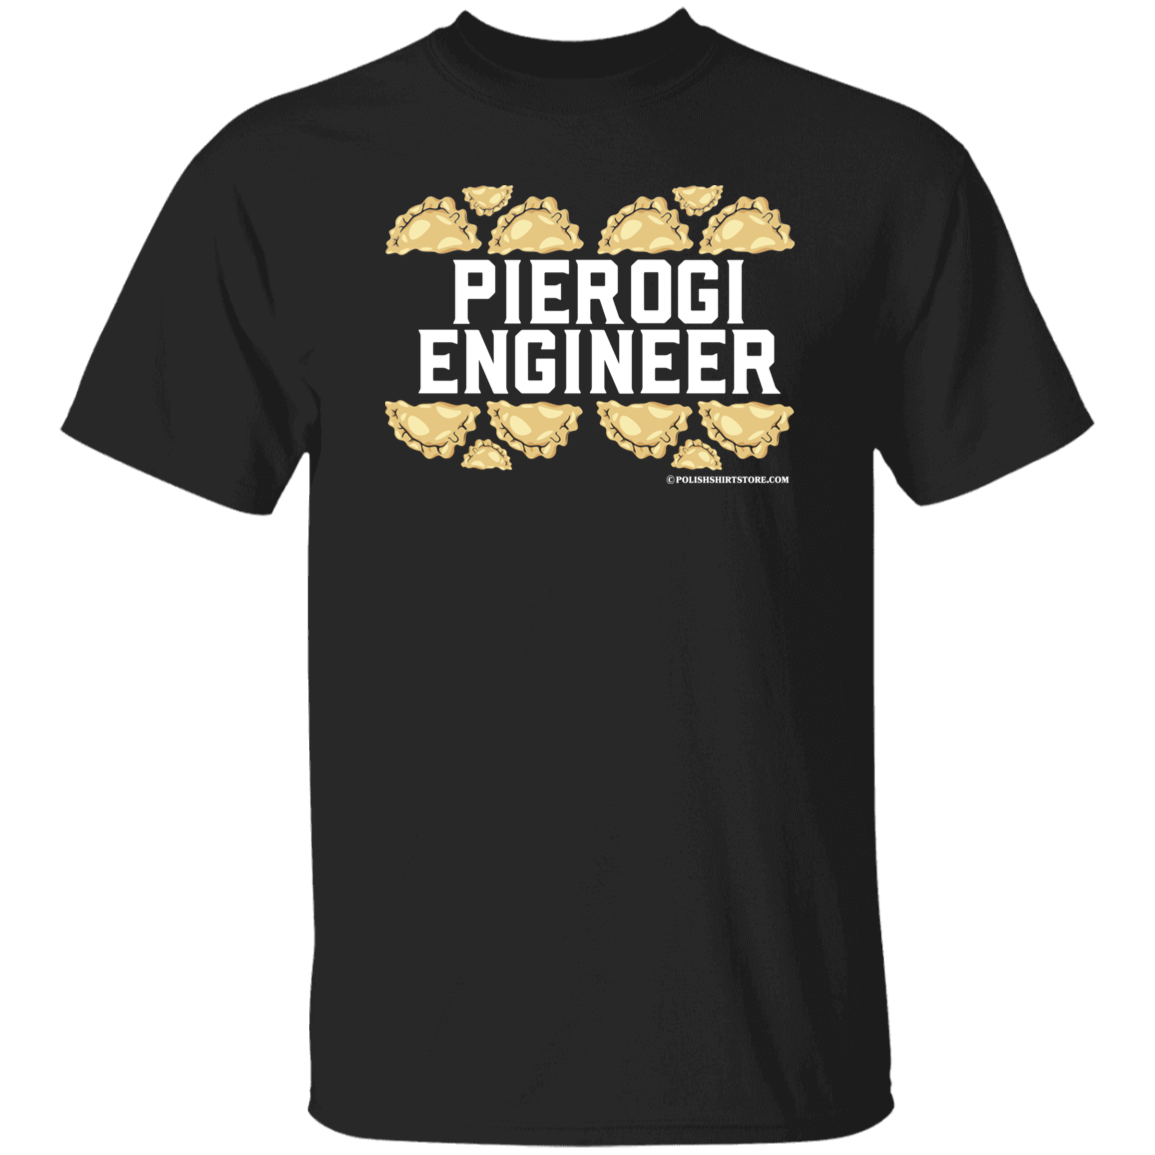 Pierogi Engineer T-Shirt Apparel CustomCat G500 5.3 oz. T-Shirt Black S